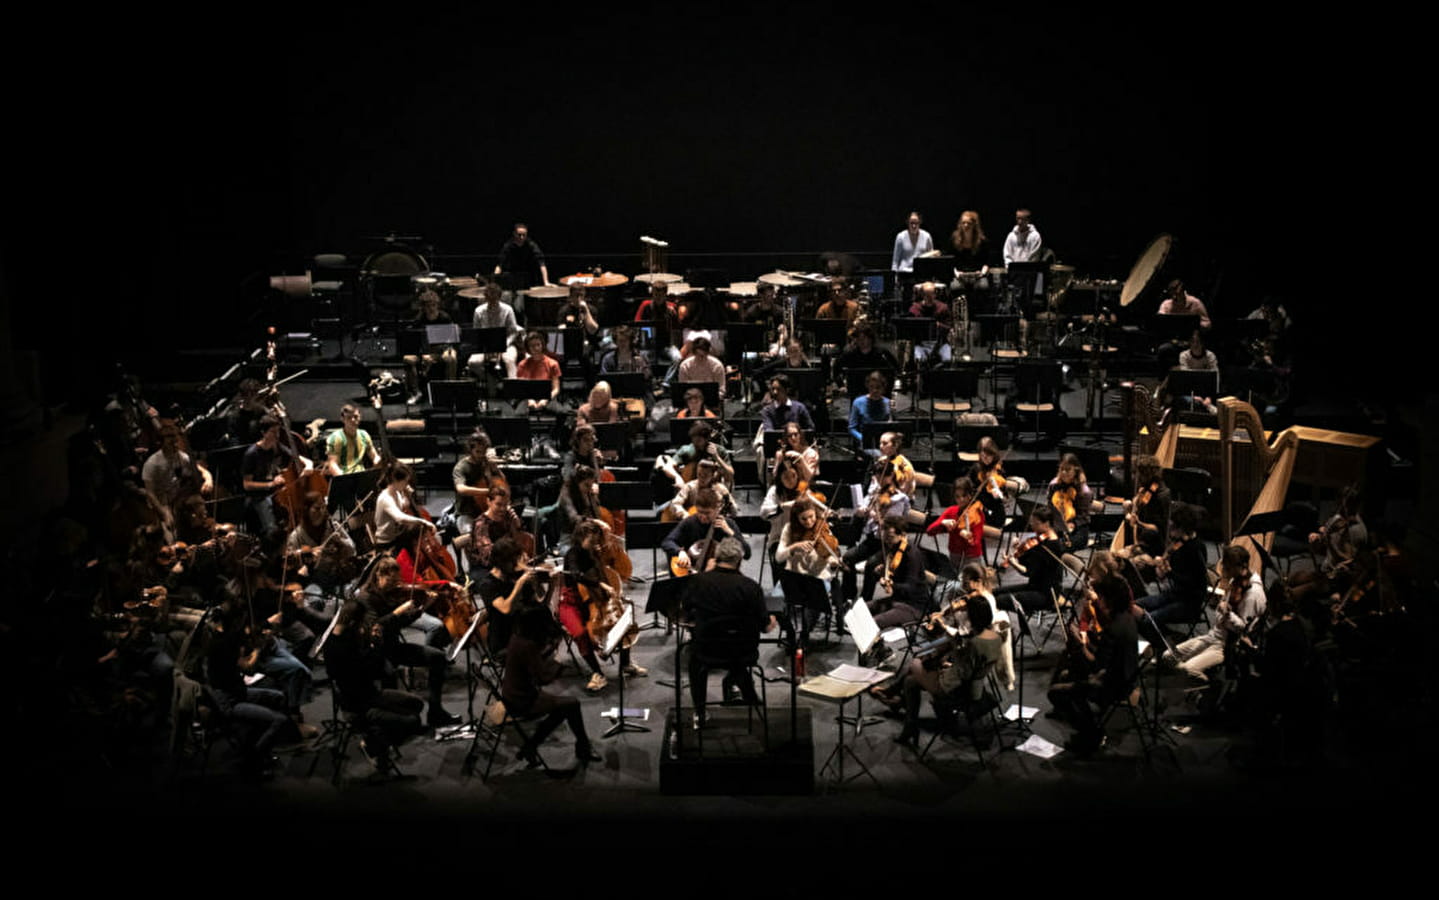 Concert by the Orchestre Français des Jeunes at the Saline Royale